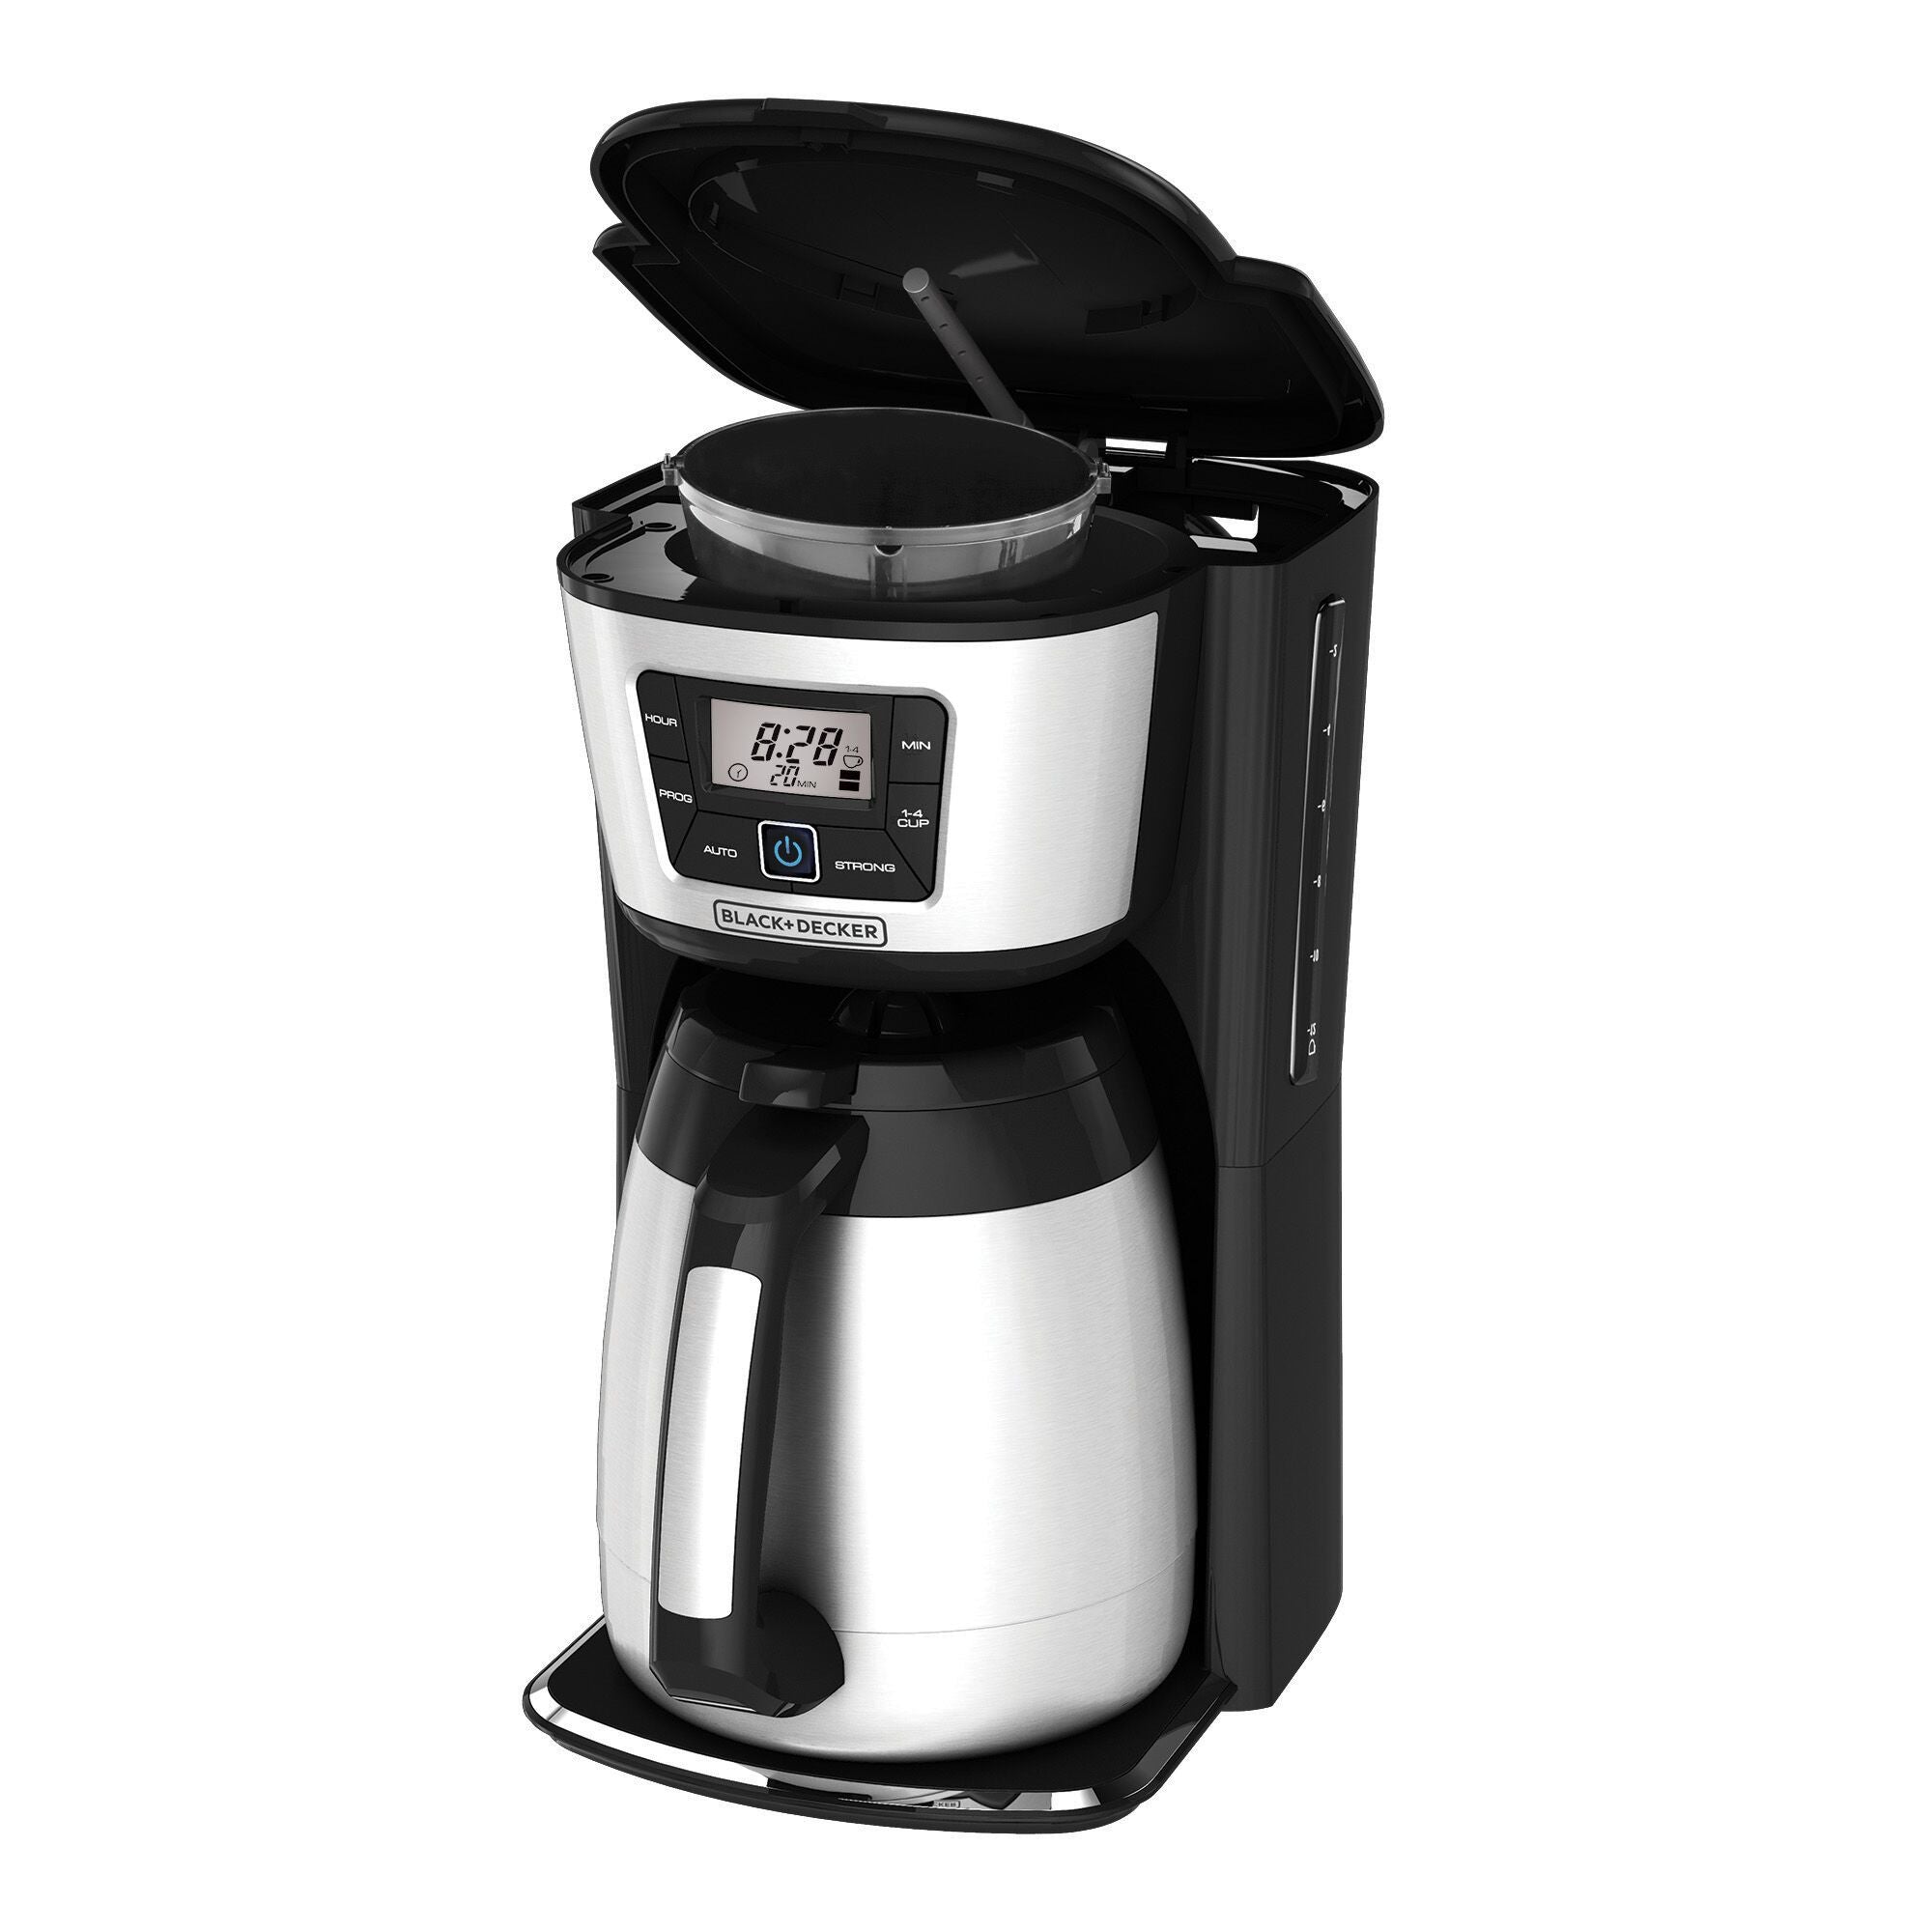 Black+decker 12-Cup Programmable Coffee Maker, Silver